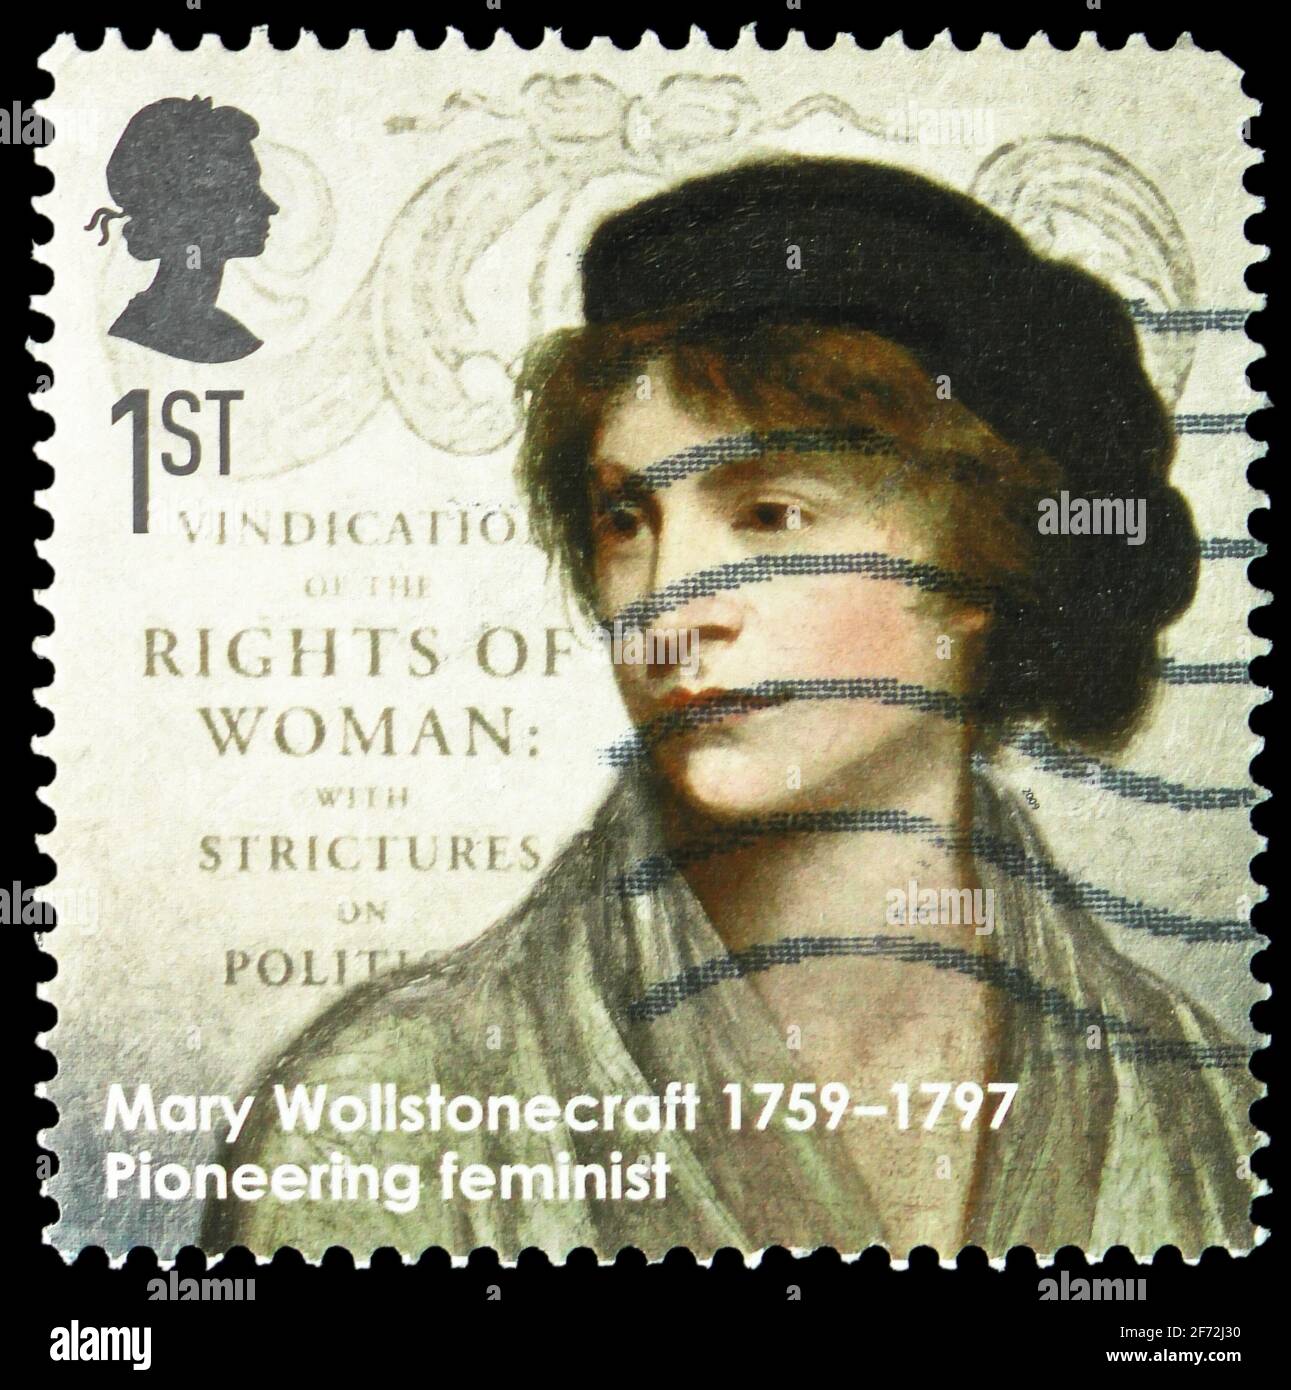 MOSCOU, RUSSIE - 22 DÉCEMBRE 2020: Timbre-poste imprimé au Royaume-Uni montre Mary Wollstonecraft - féministe, Eminent Britons (Europa C.E.P.T. 200 Banque D'Images